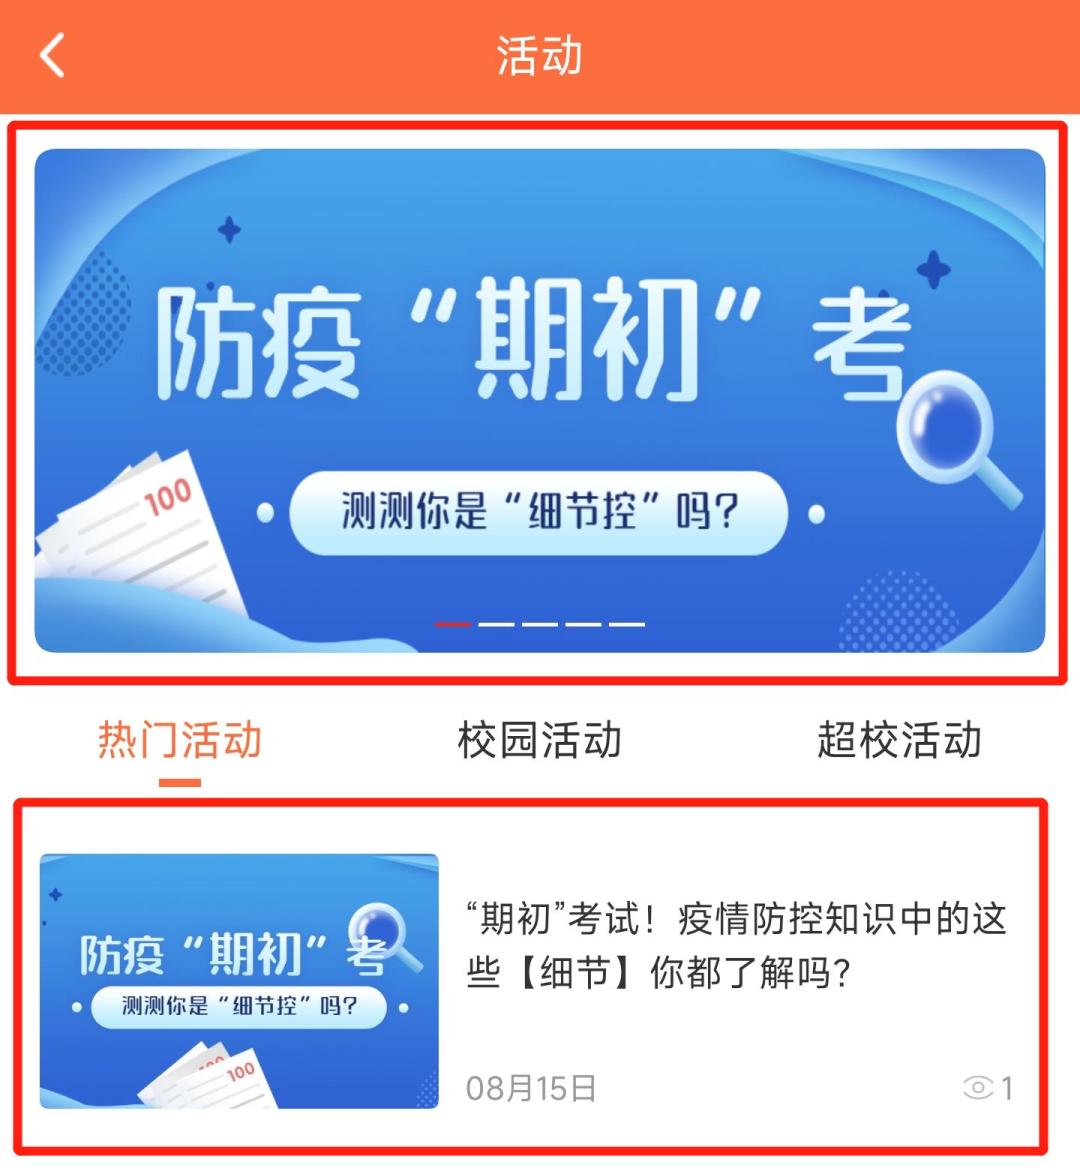 平安社区 | 天津财经大学学生社区线上开展防疫知识线上竞赛